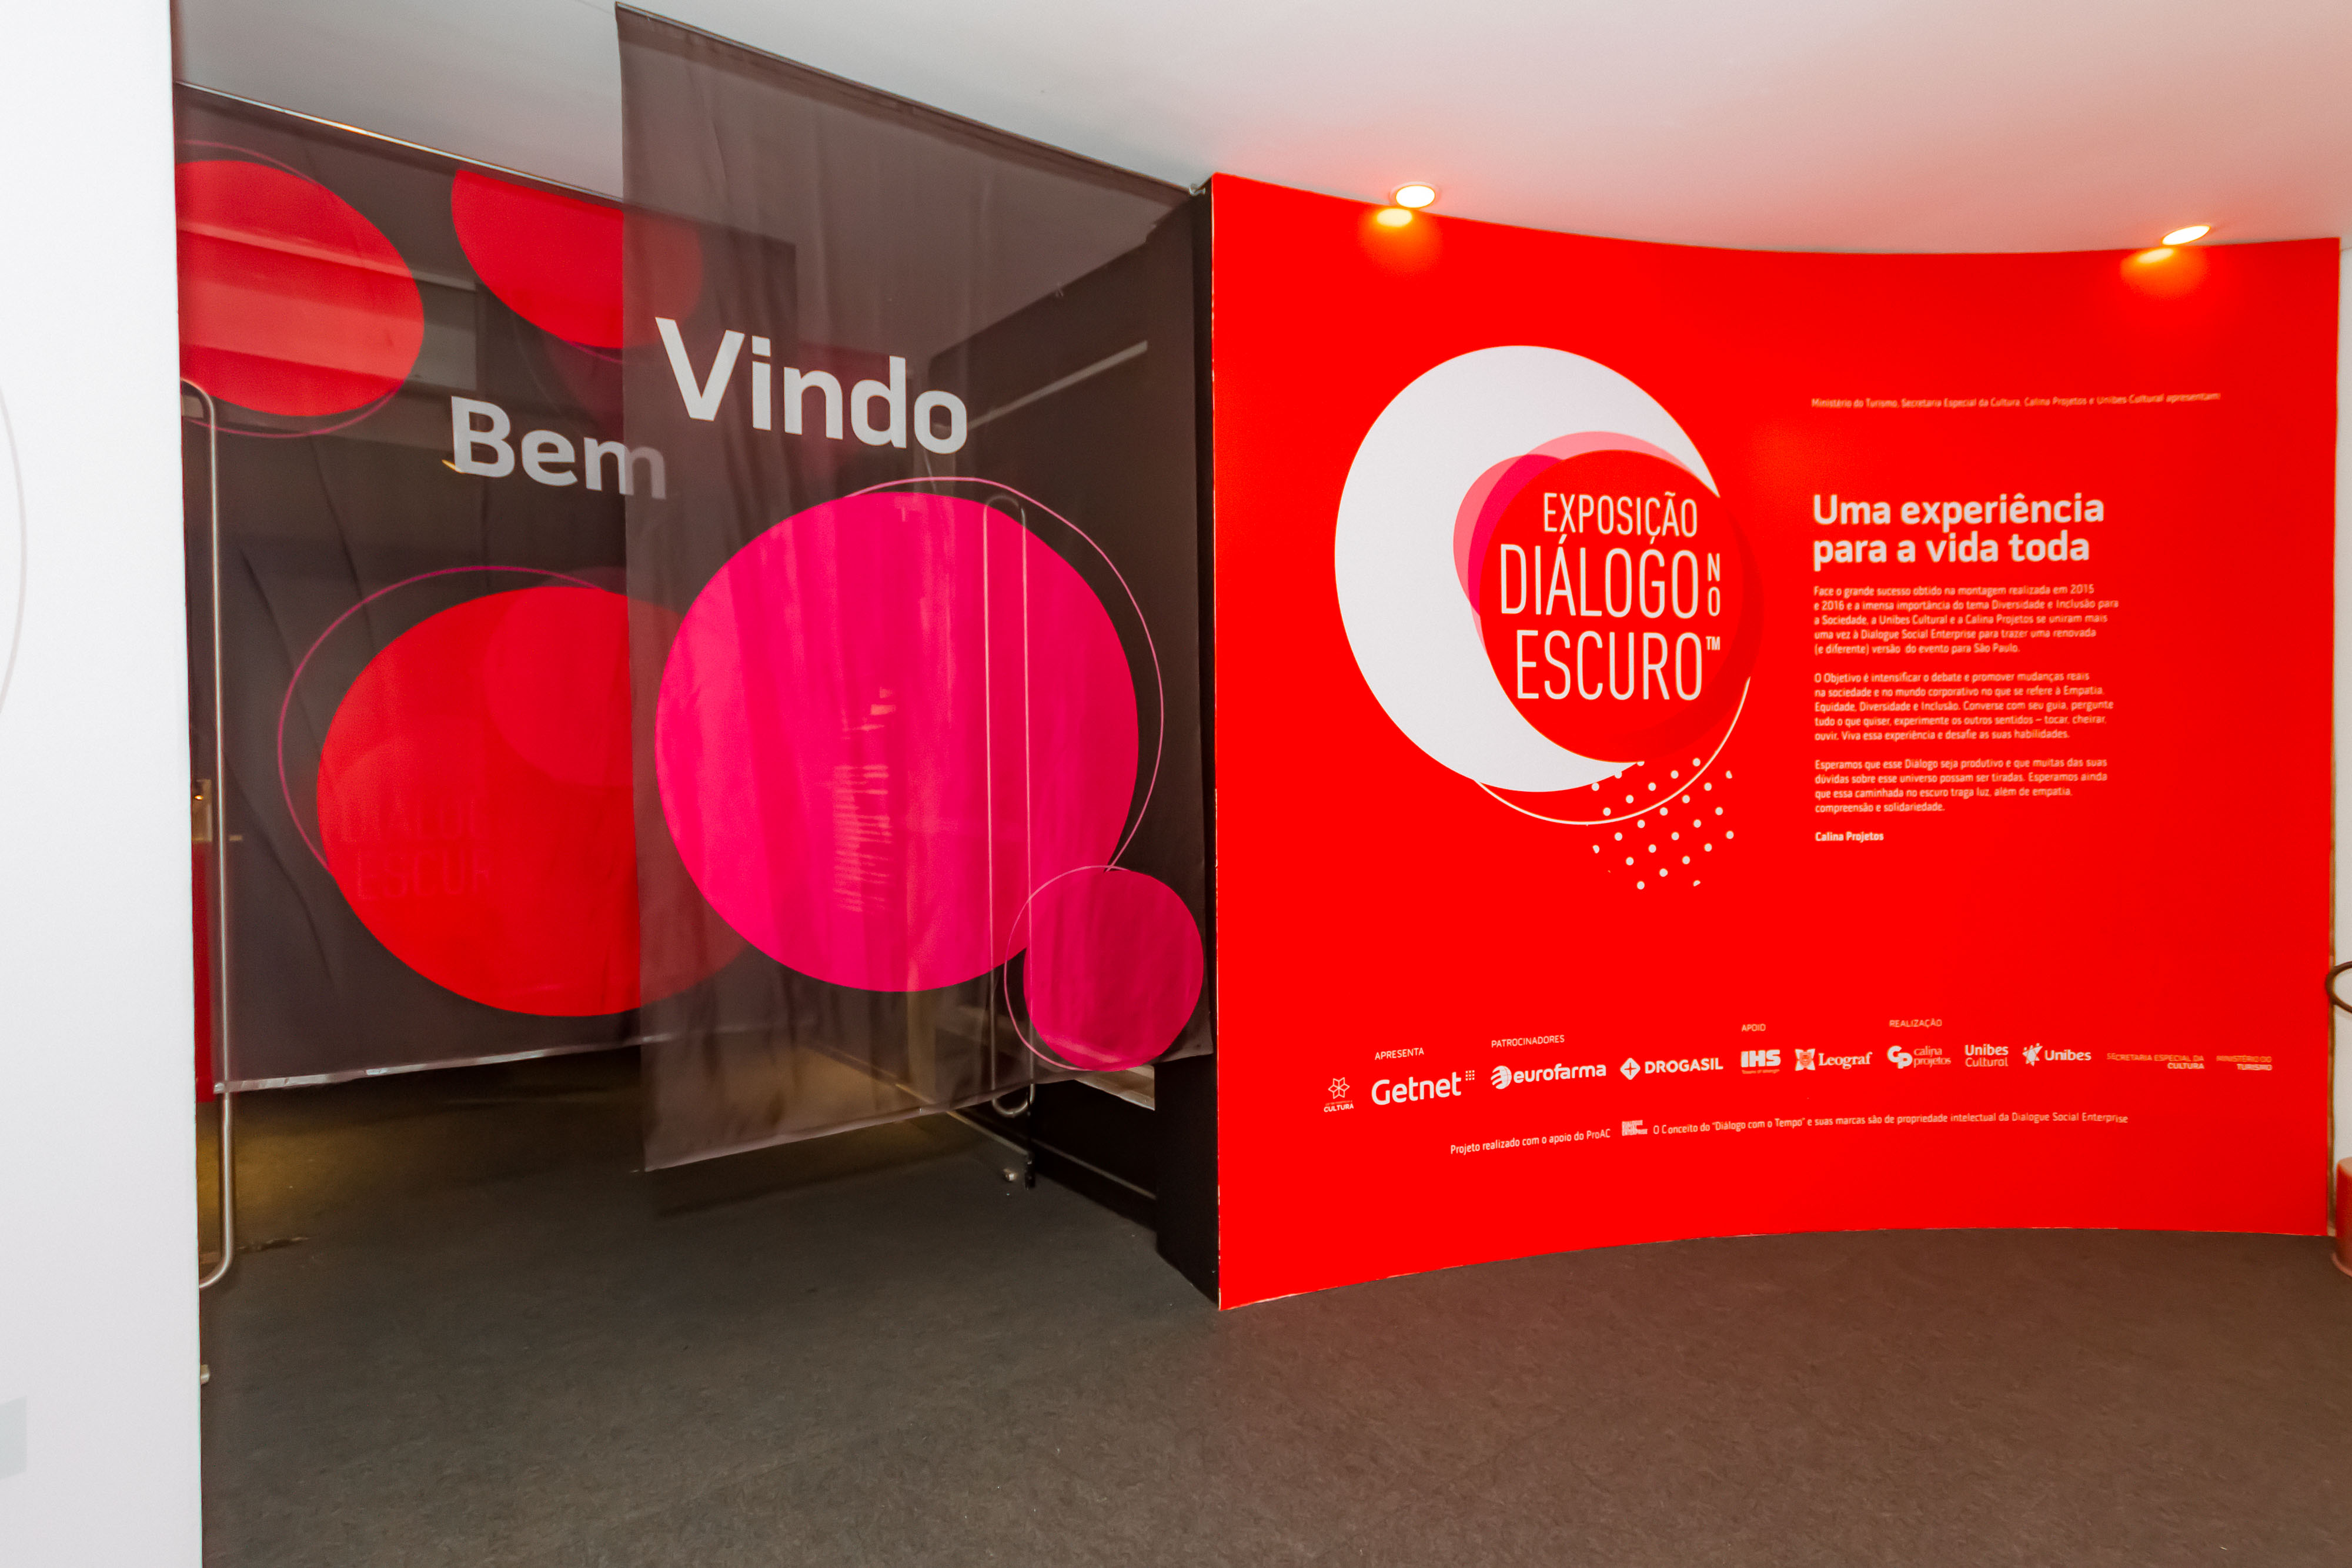 Foto da entrada com cortinas escritas bem vindo e parede vermelha a direita com logo da exposição e textos em branco